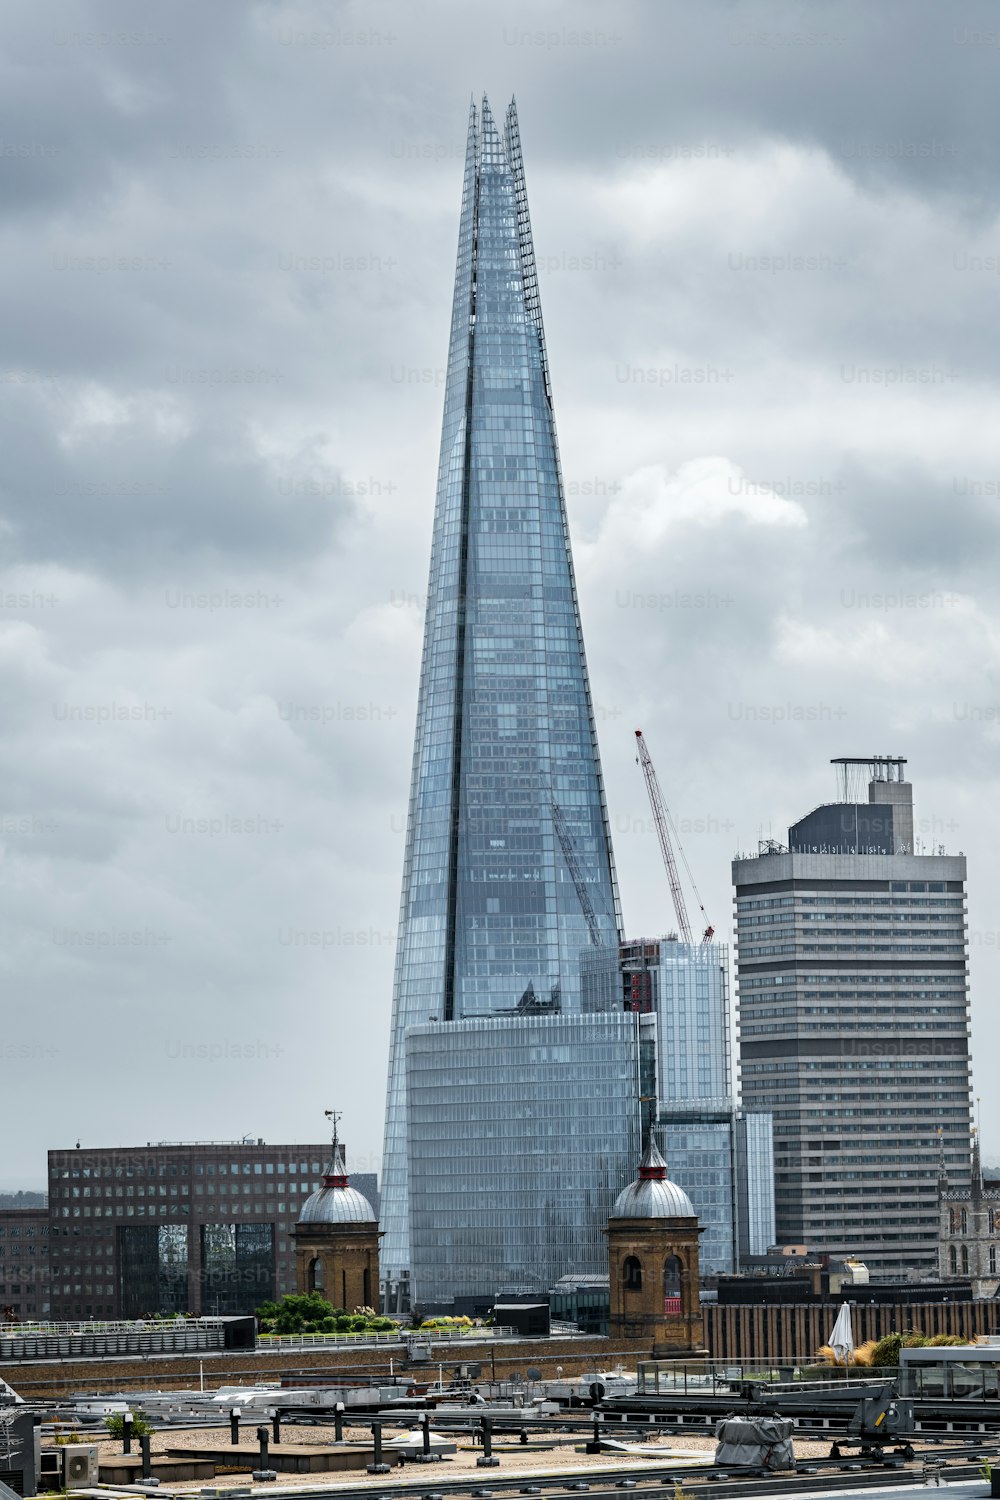 Paesaggio urbano di Londra con lo Shard sullo sfondo, il grattacielo più alto dell'Europa occidentale.